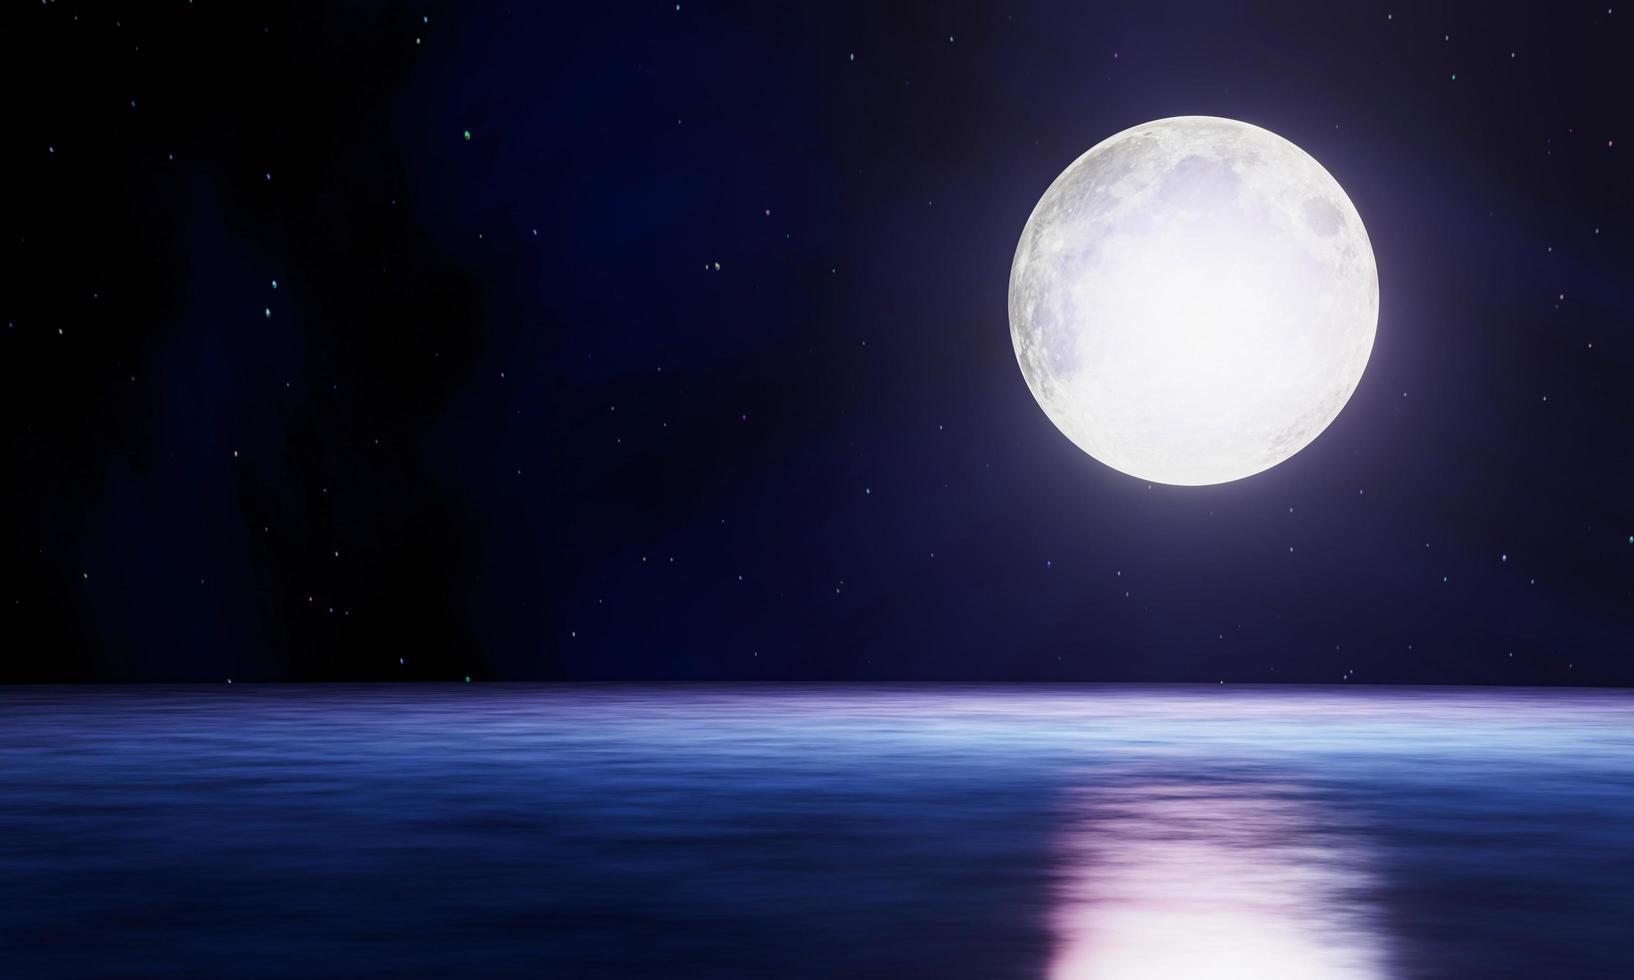 la luna piena blu si riflette nel mare. un'ondata d'acqua dall'oceano all'isola. il cielo ha molte stelle. increspature del mare di notte. rendering 3D foto